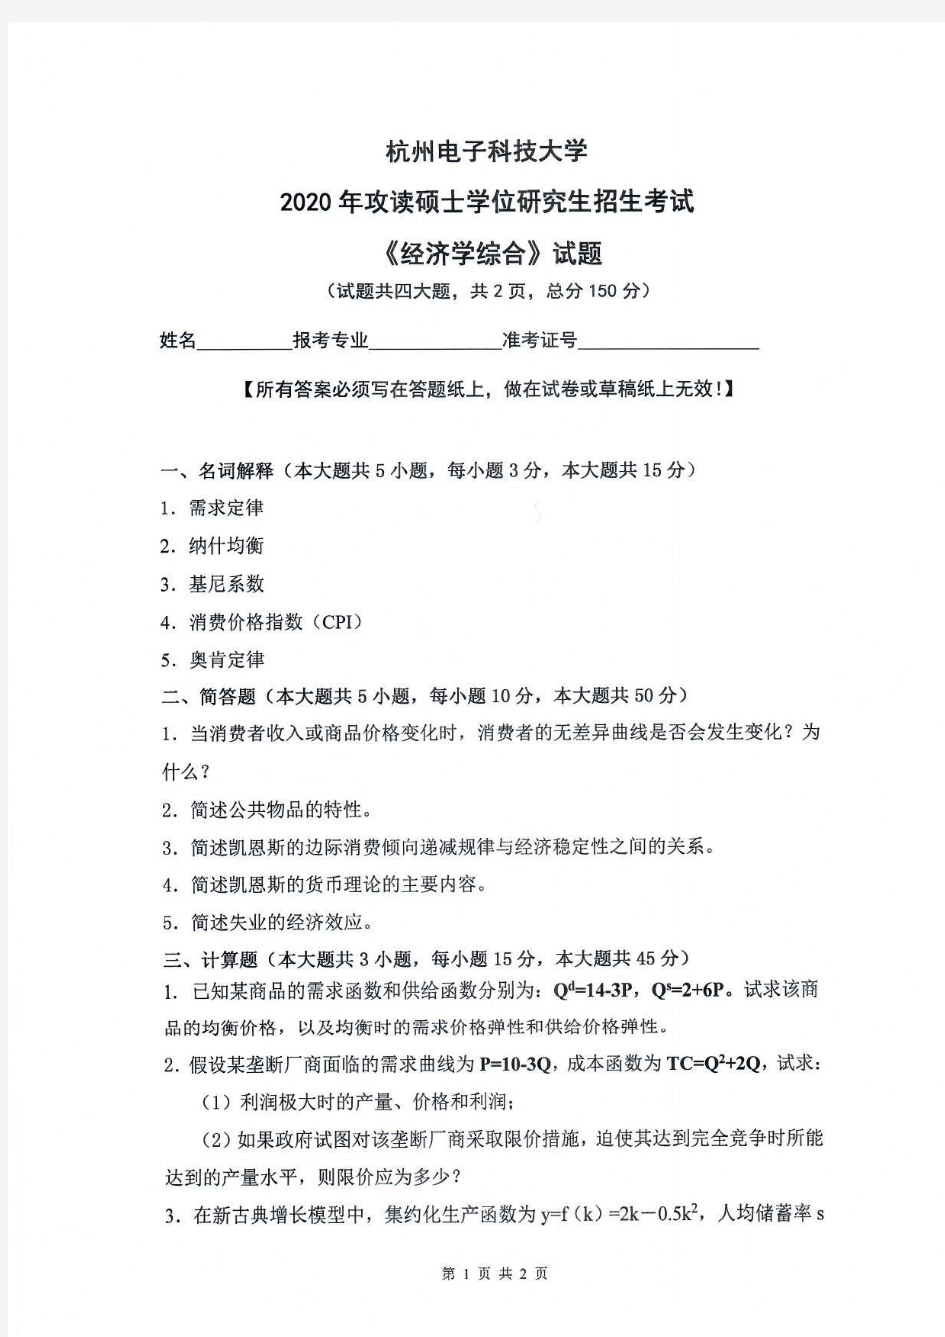 经济学综合-杭州电子科技大学2020年攻读硕士学位研究生招生考试试题